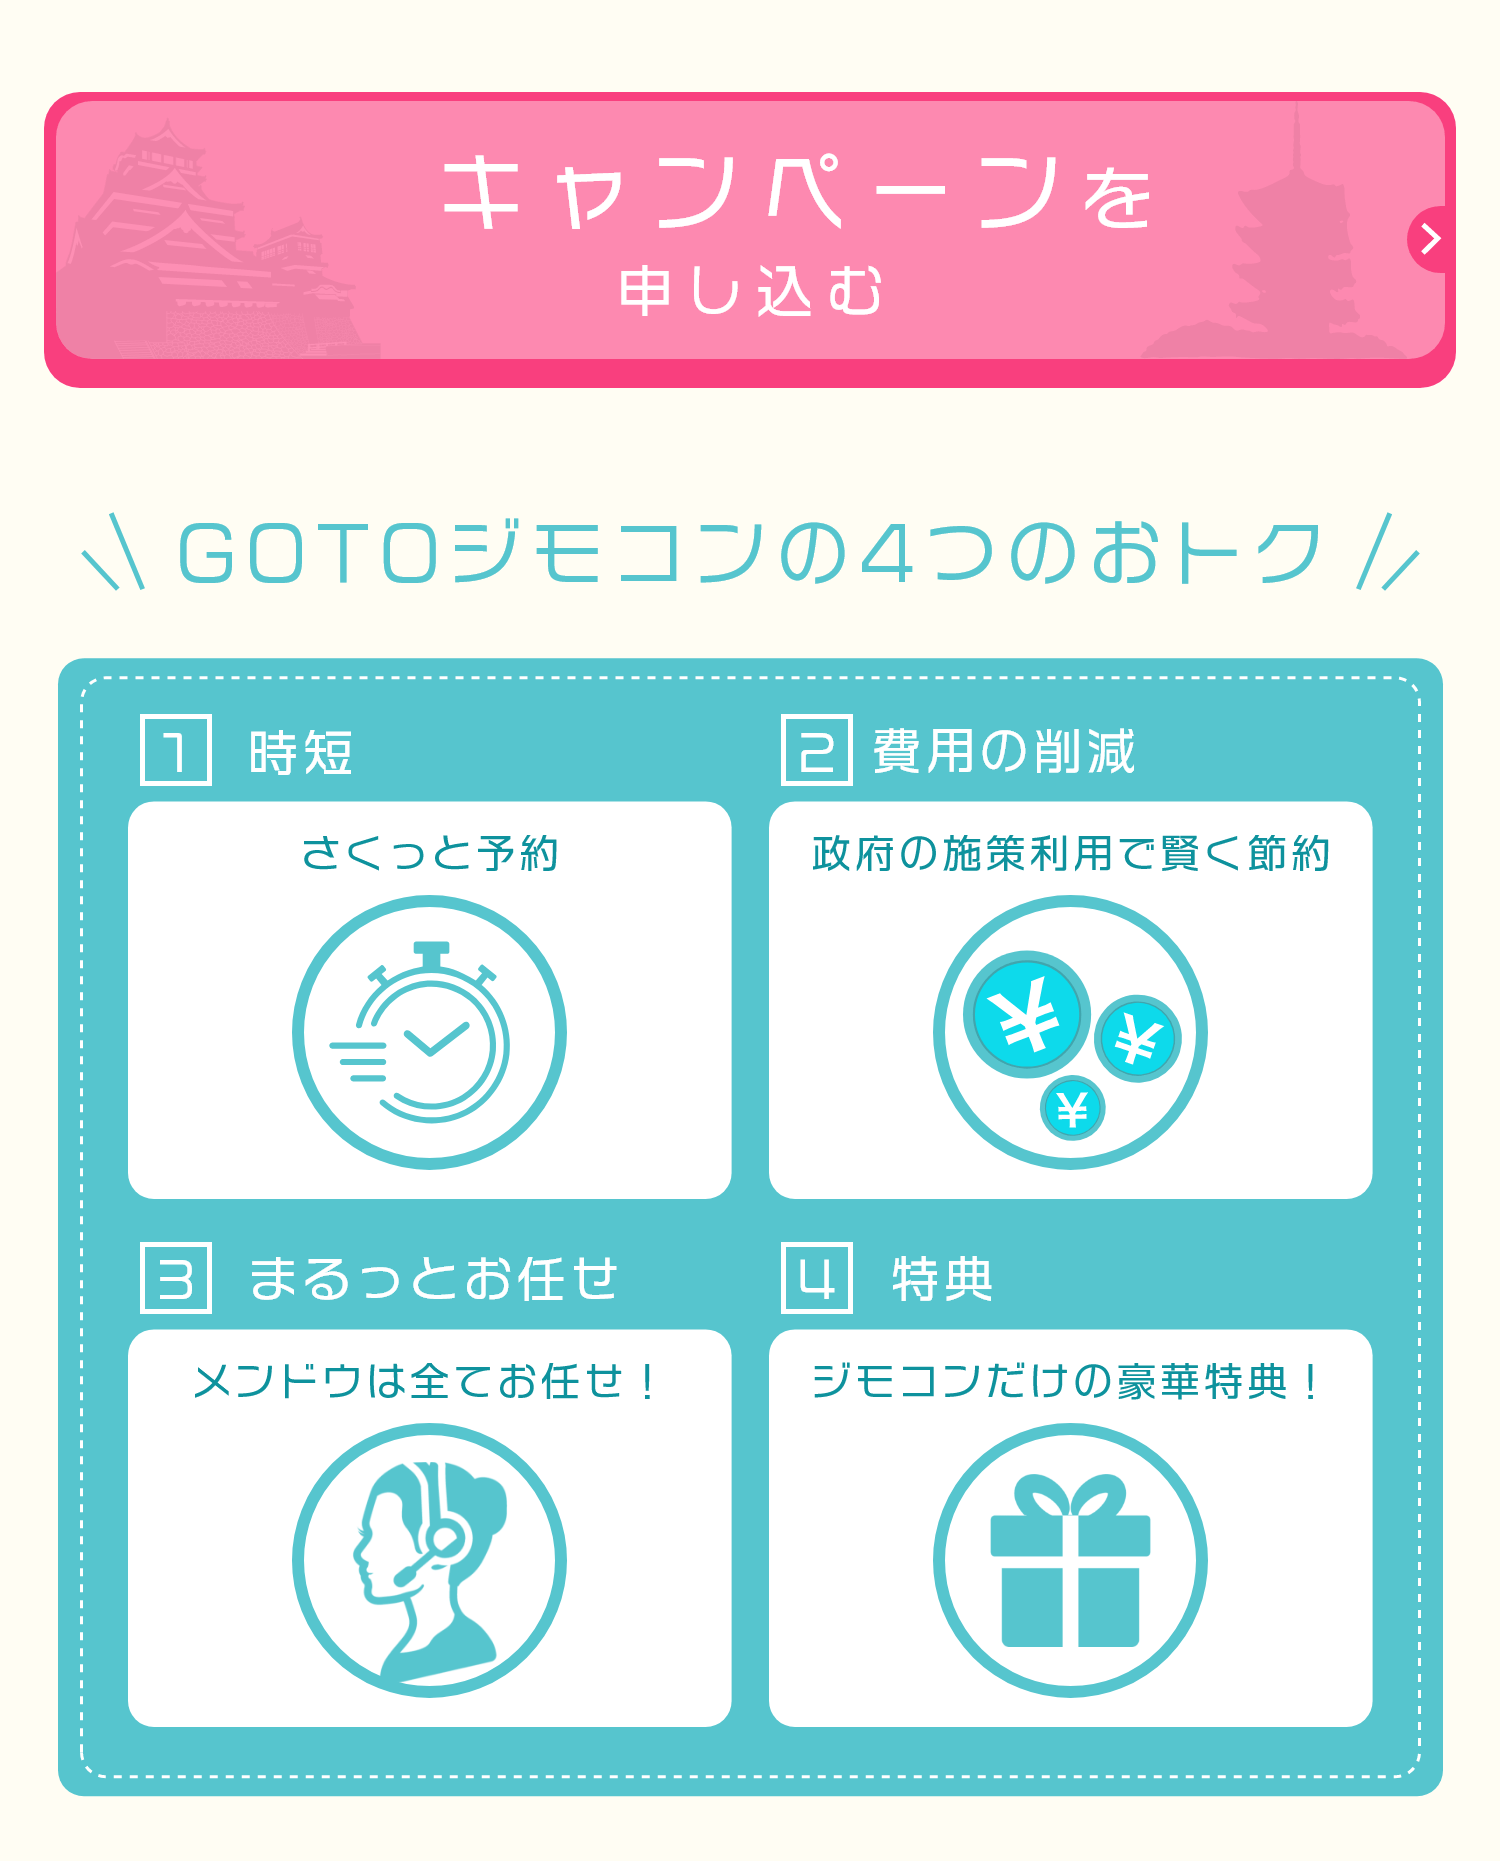 GoToジモコン4つのお得